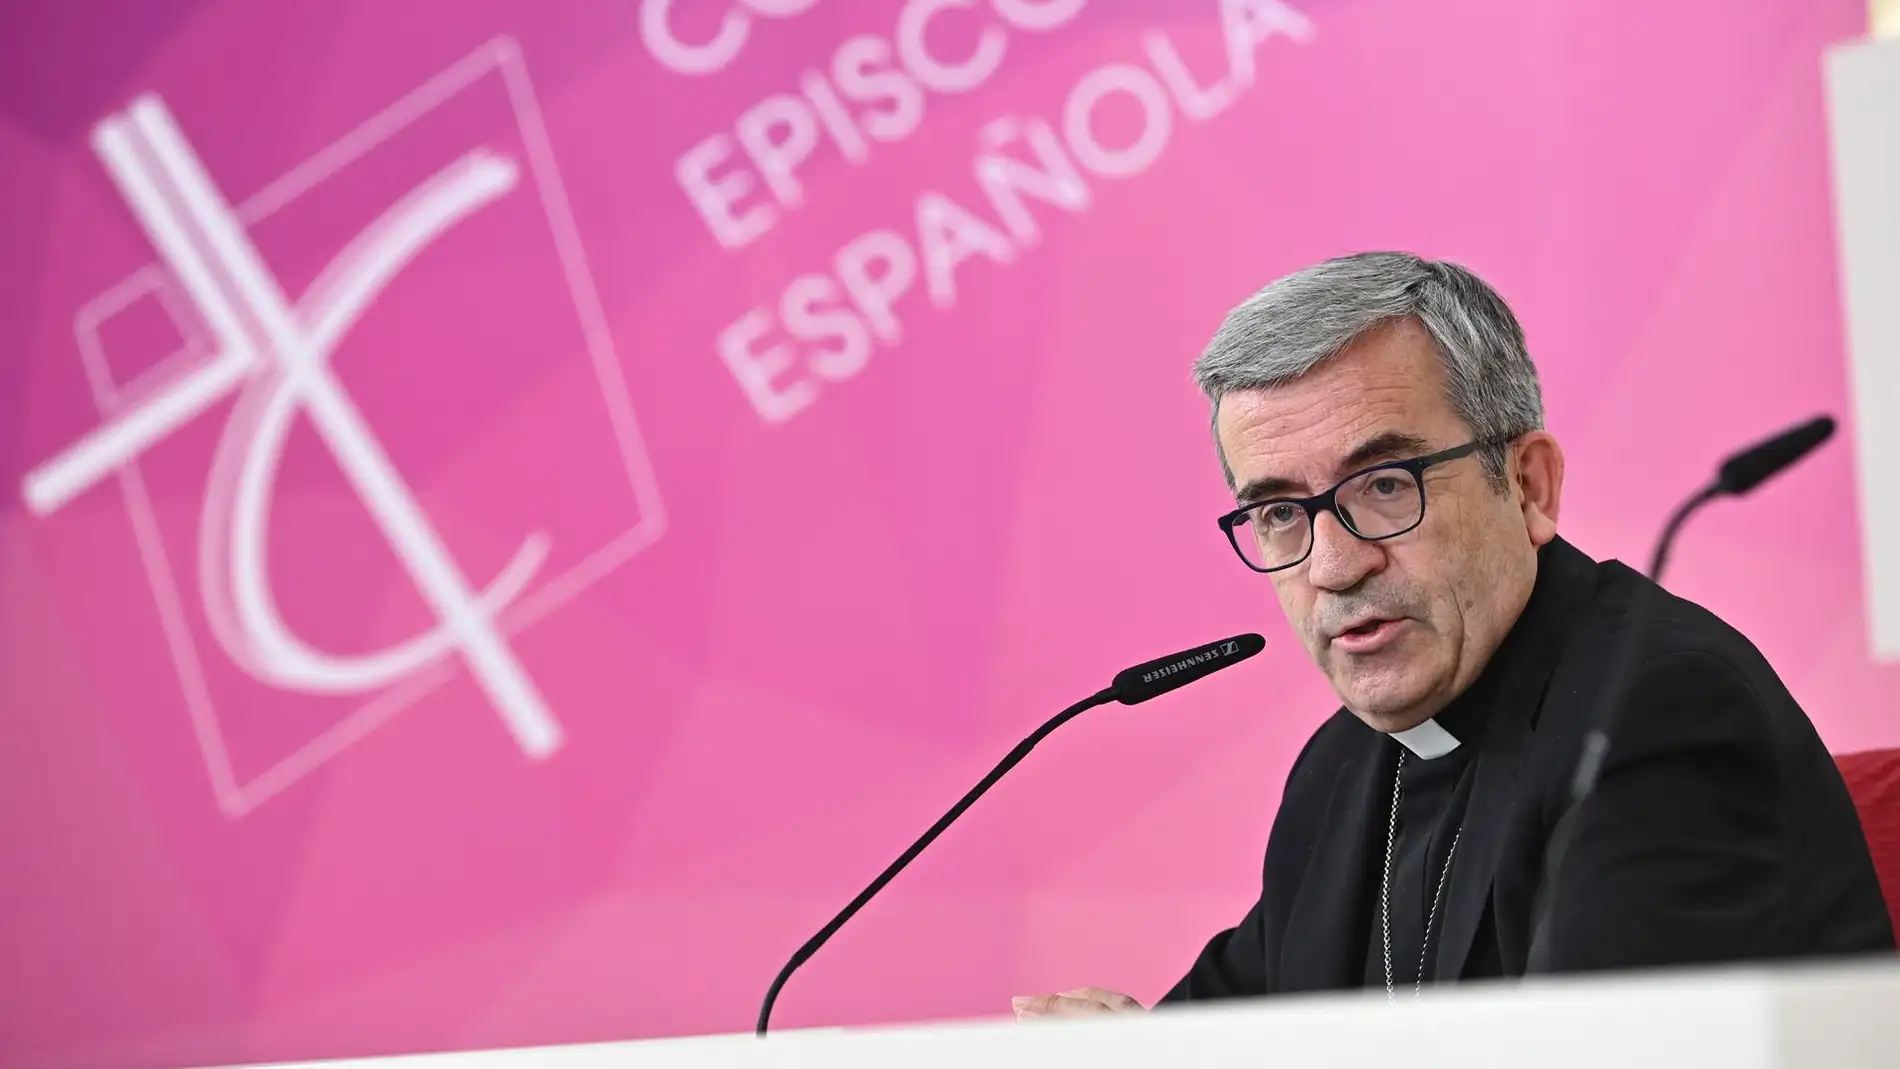 El palentino Luis Argüello elegido nuevo presidente de la Conferencia  Episcopal para los próximos cuatro años | Onda Cero Radio